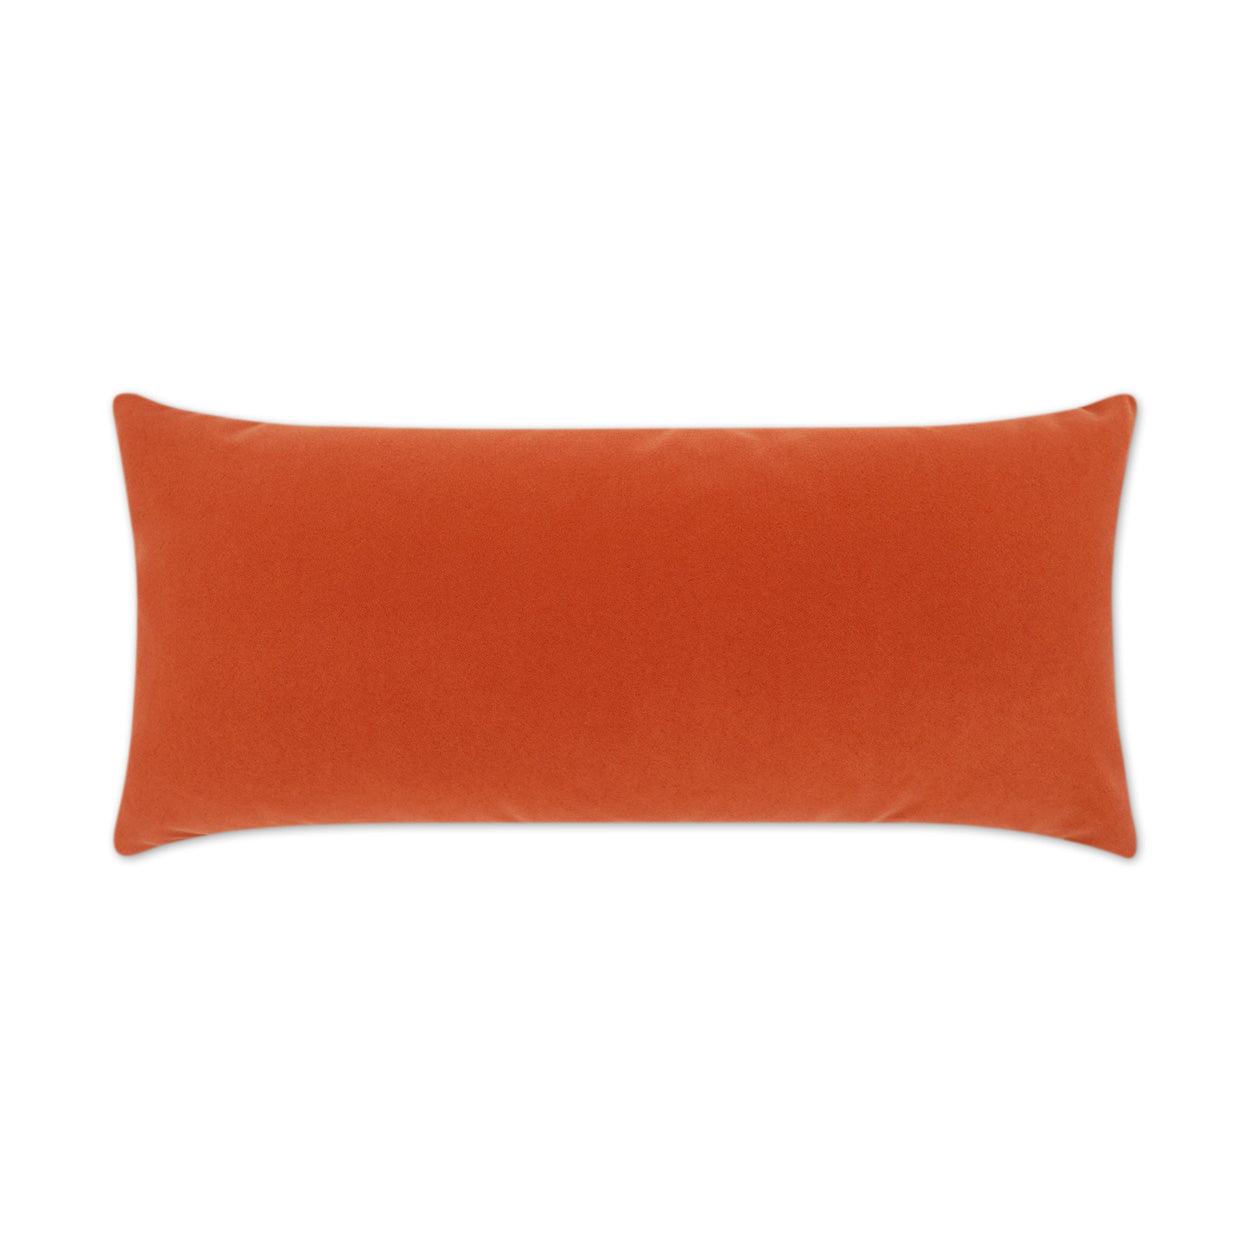 LOOMLAN Outdoor - Outdoor Sundance Lumbar Pillow - Orange - Outdoor Pillows